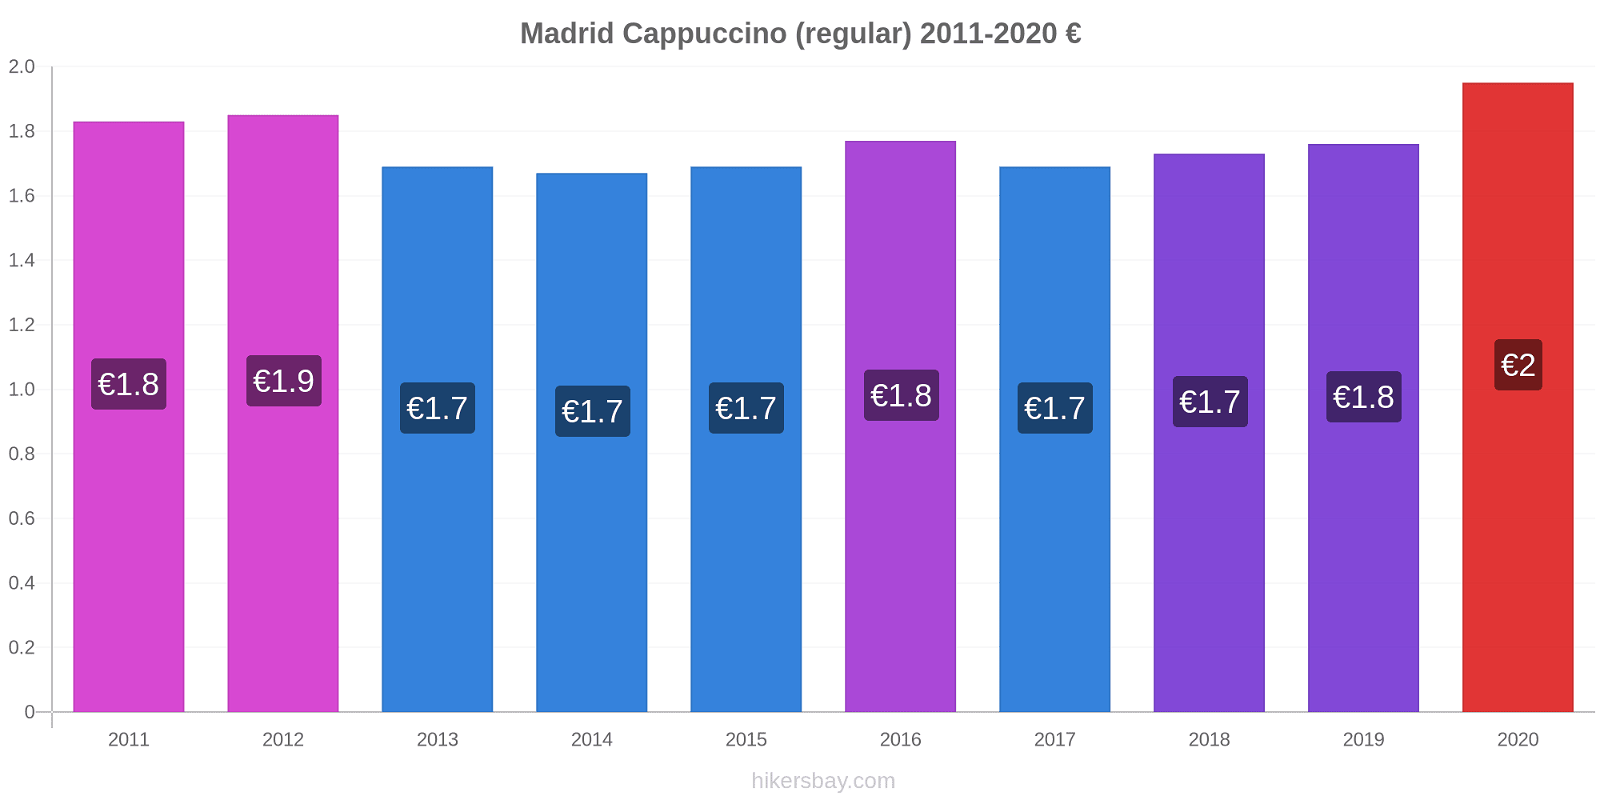 Madrid price changes Cappuccino (regular) hikersbay.com